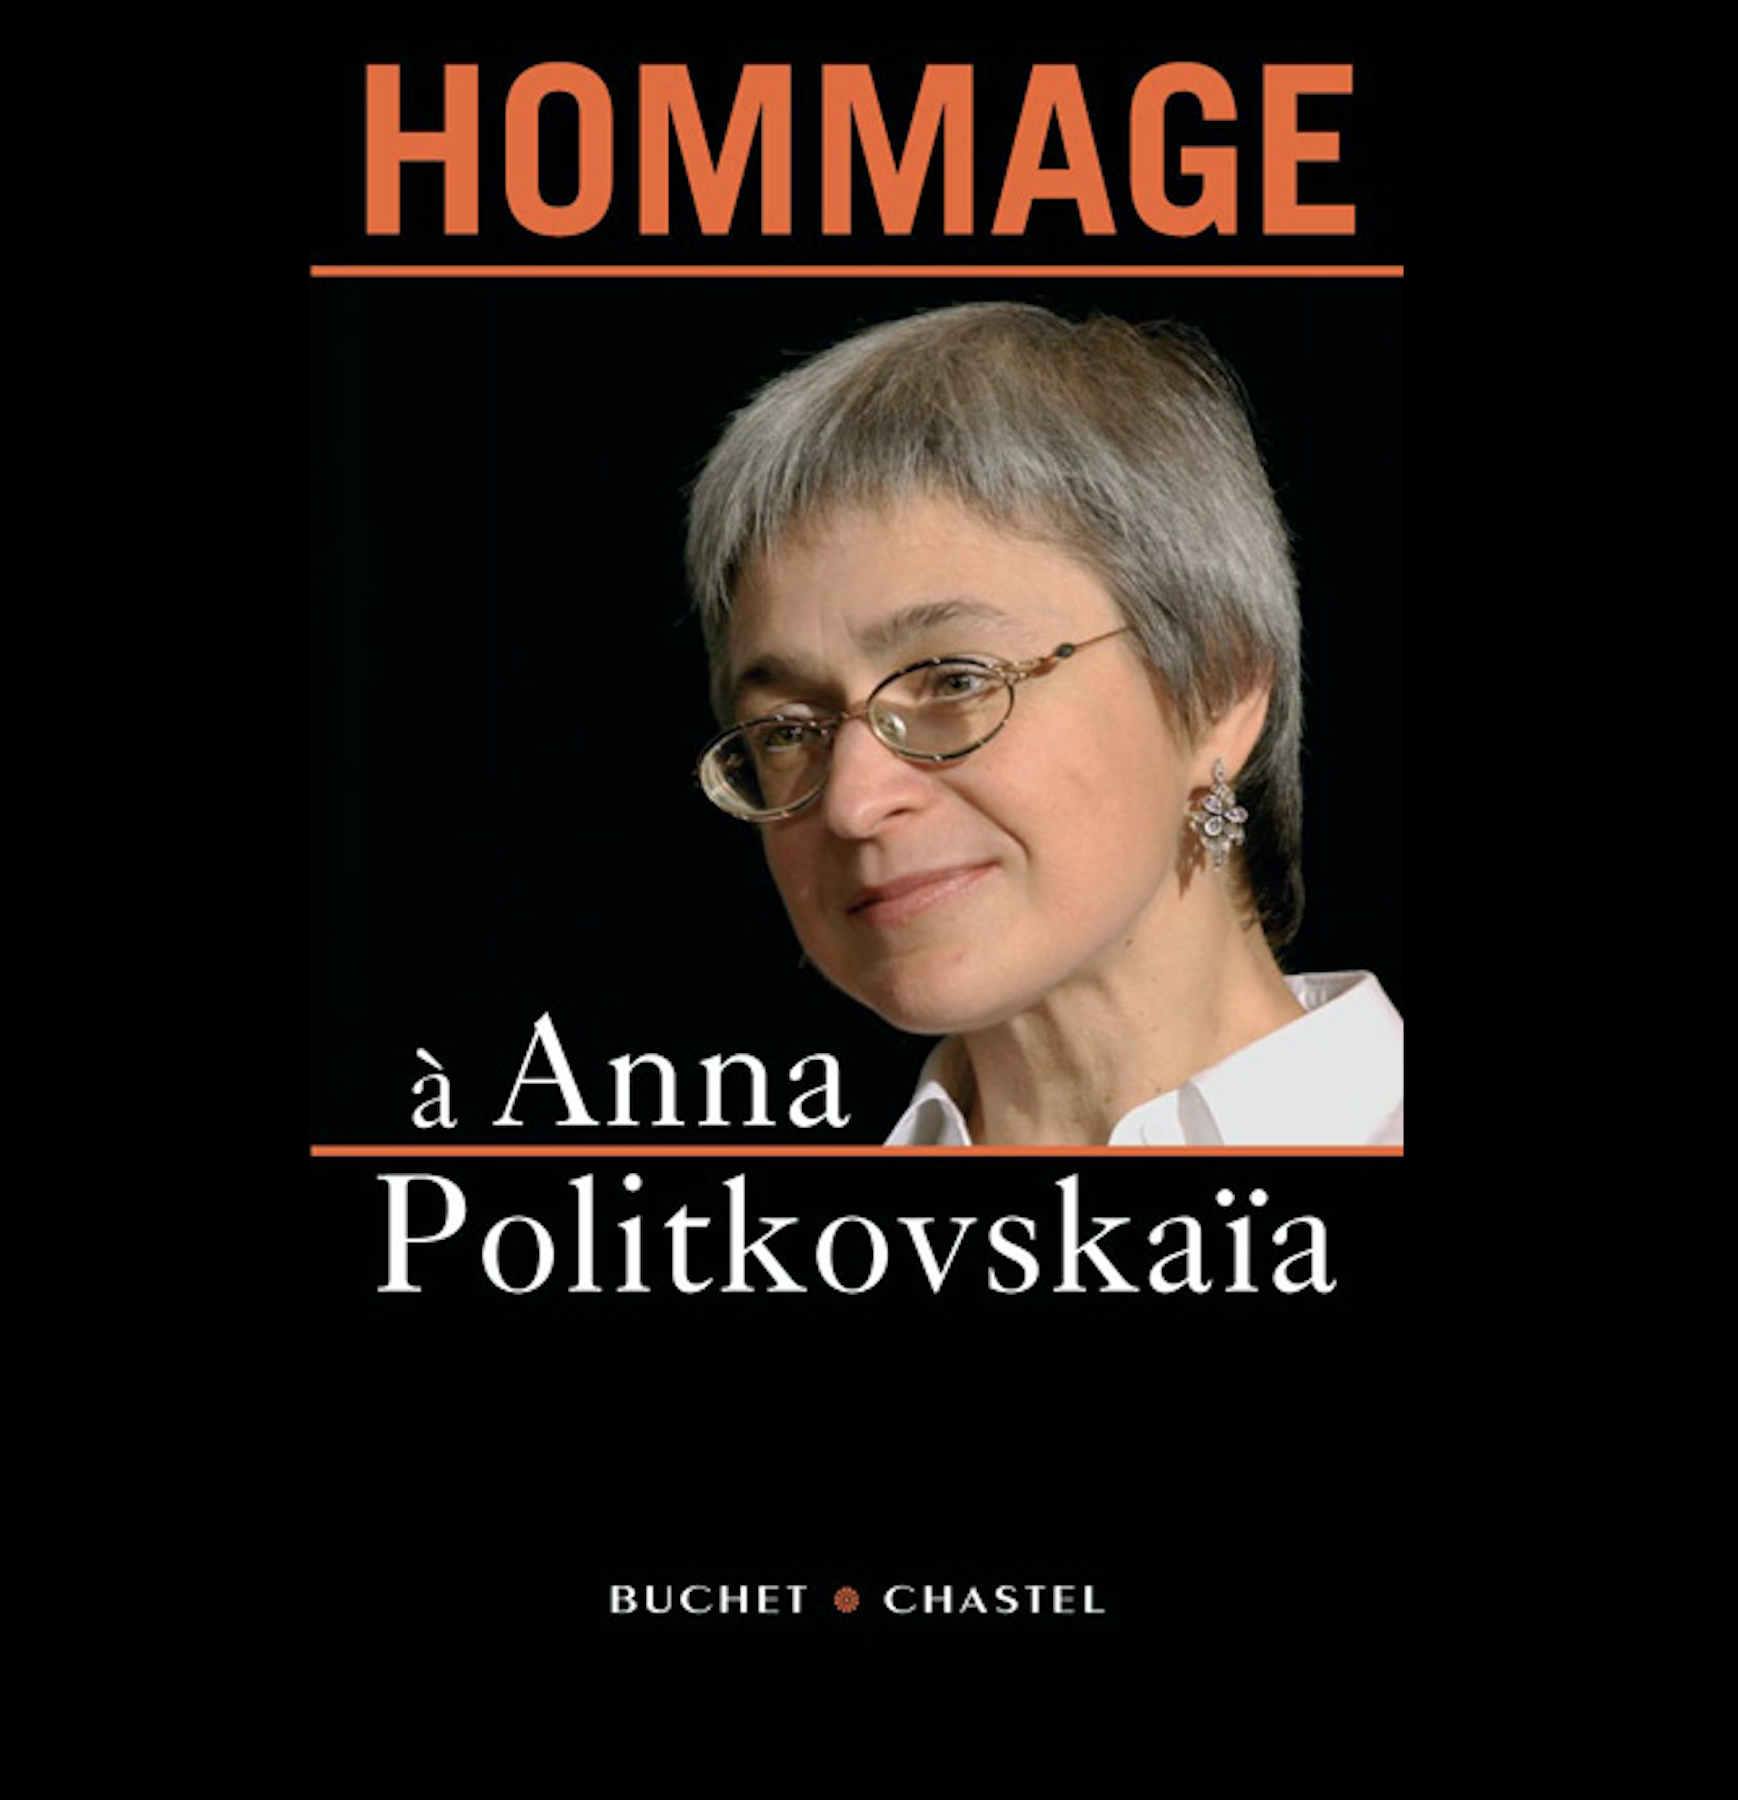 Couverture du livre édité par Buchel Chastel en 2007 "Hommage à Anna Politkovskaïa"